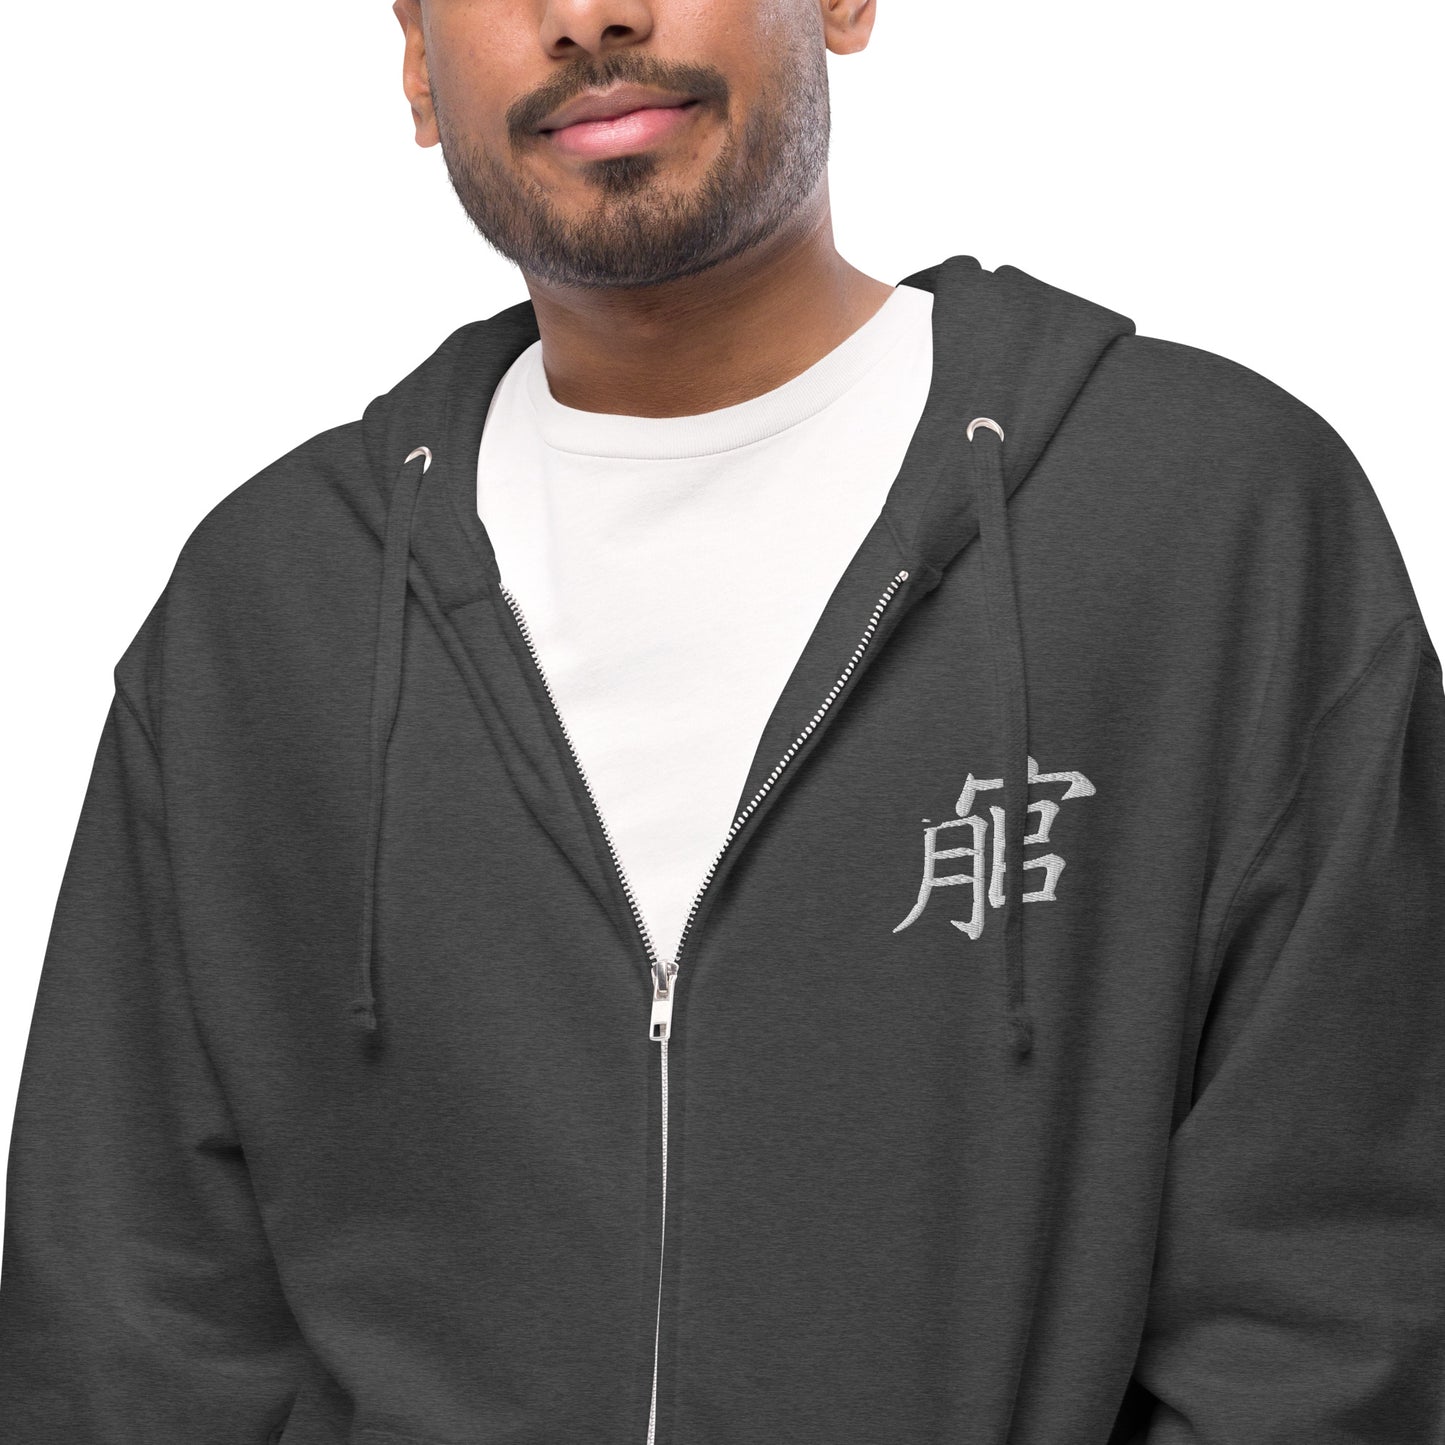 Andreco B.fleece zip up hoodie